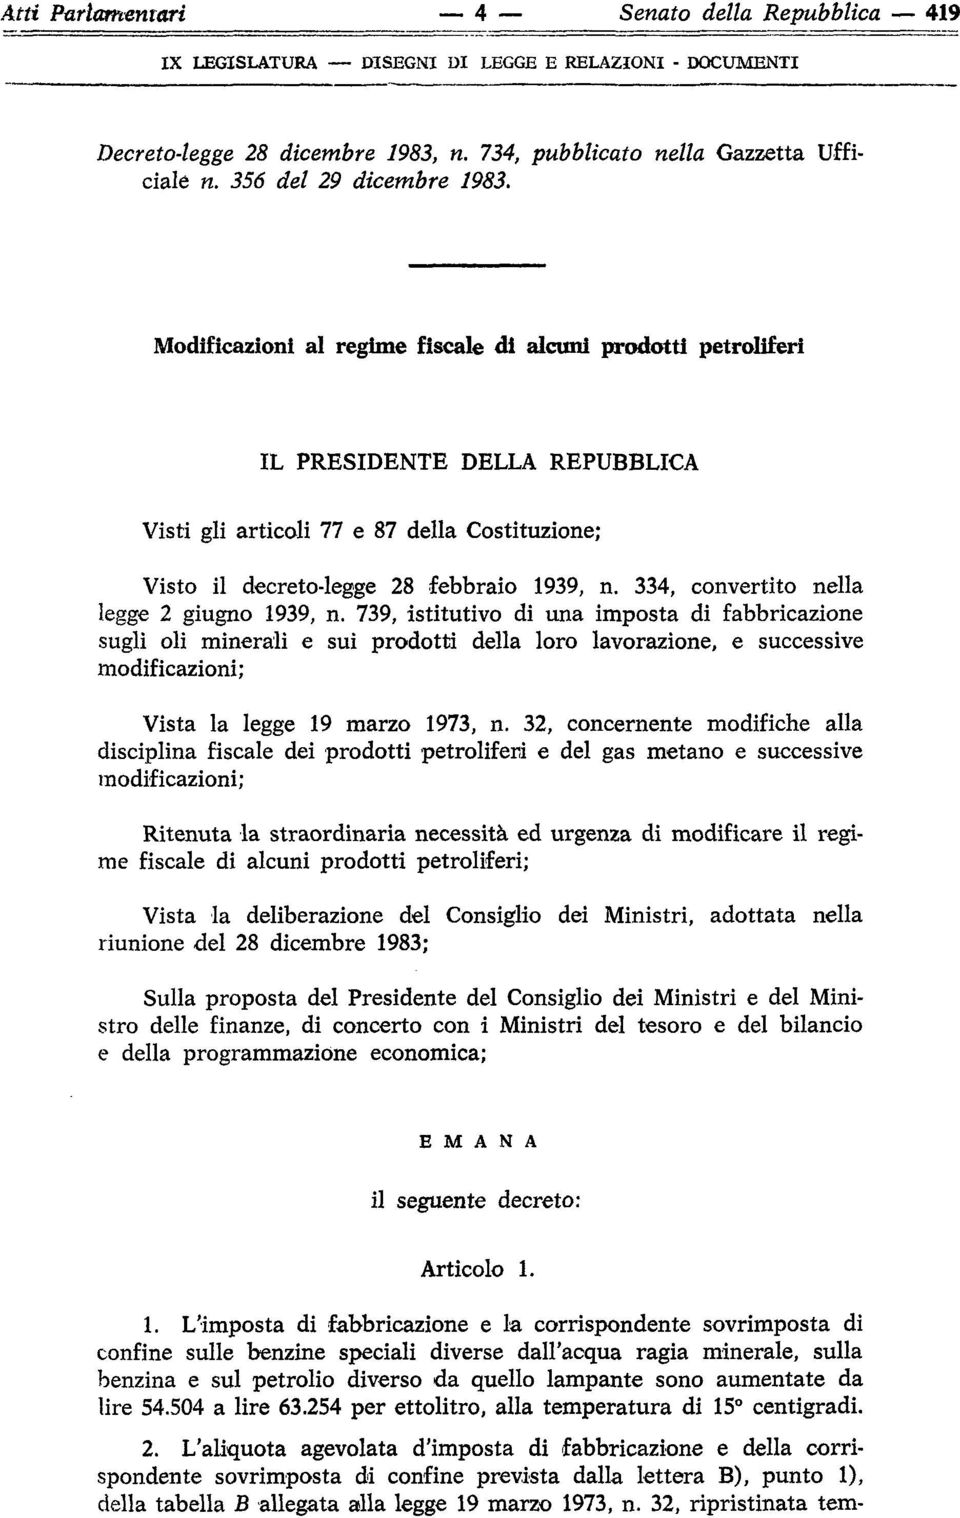 334, convertito nella legge 2 giugno 1939, n.